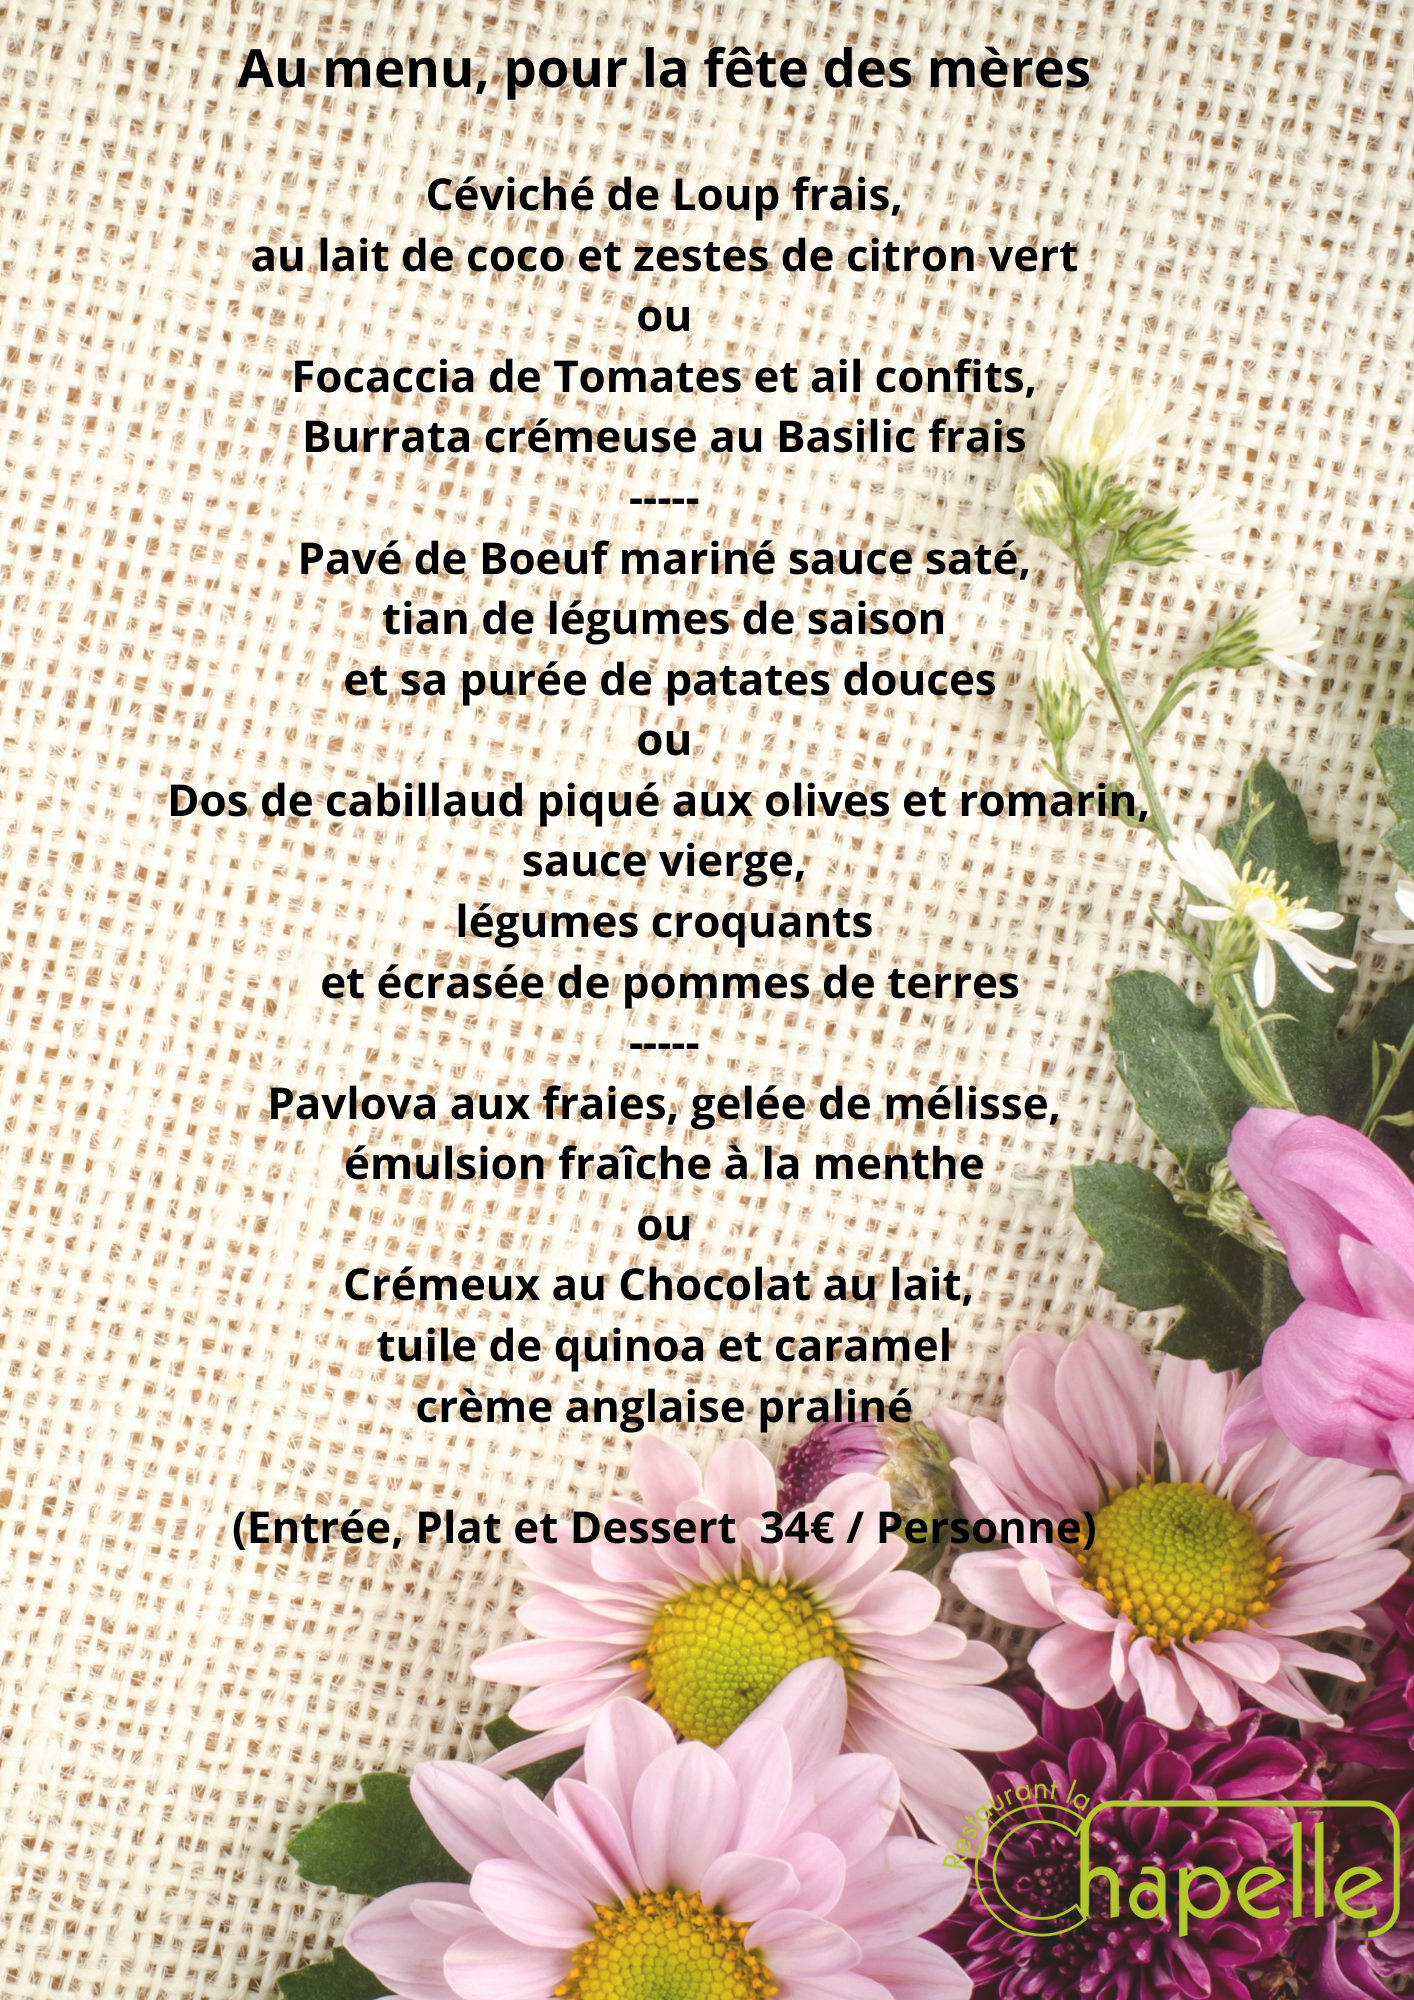 publication menu fête des mère (Flyer (portrait))-4